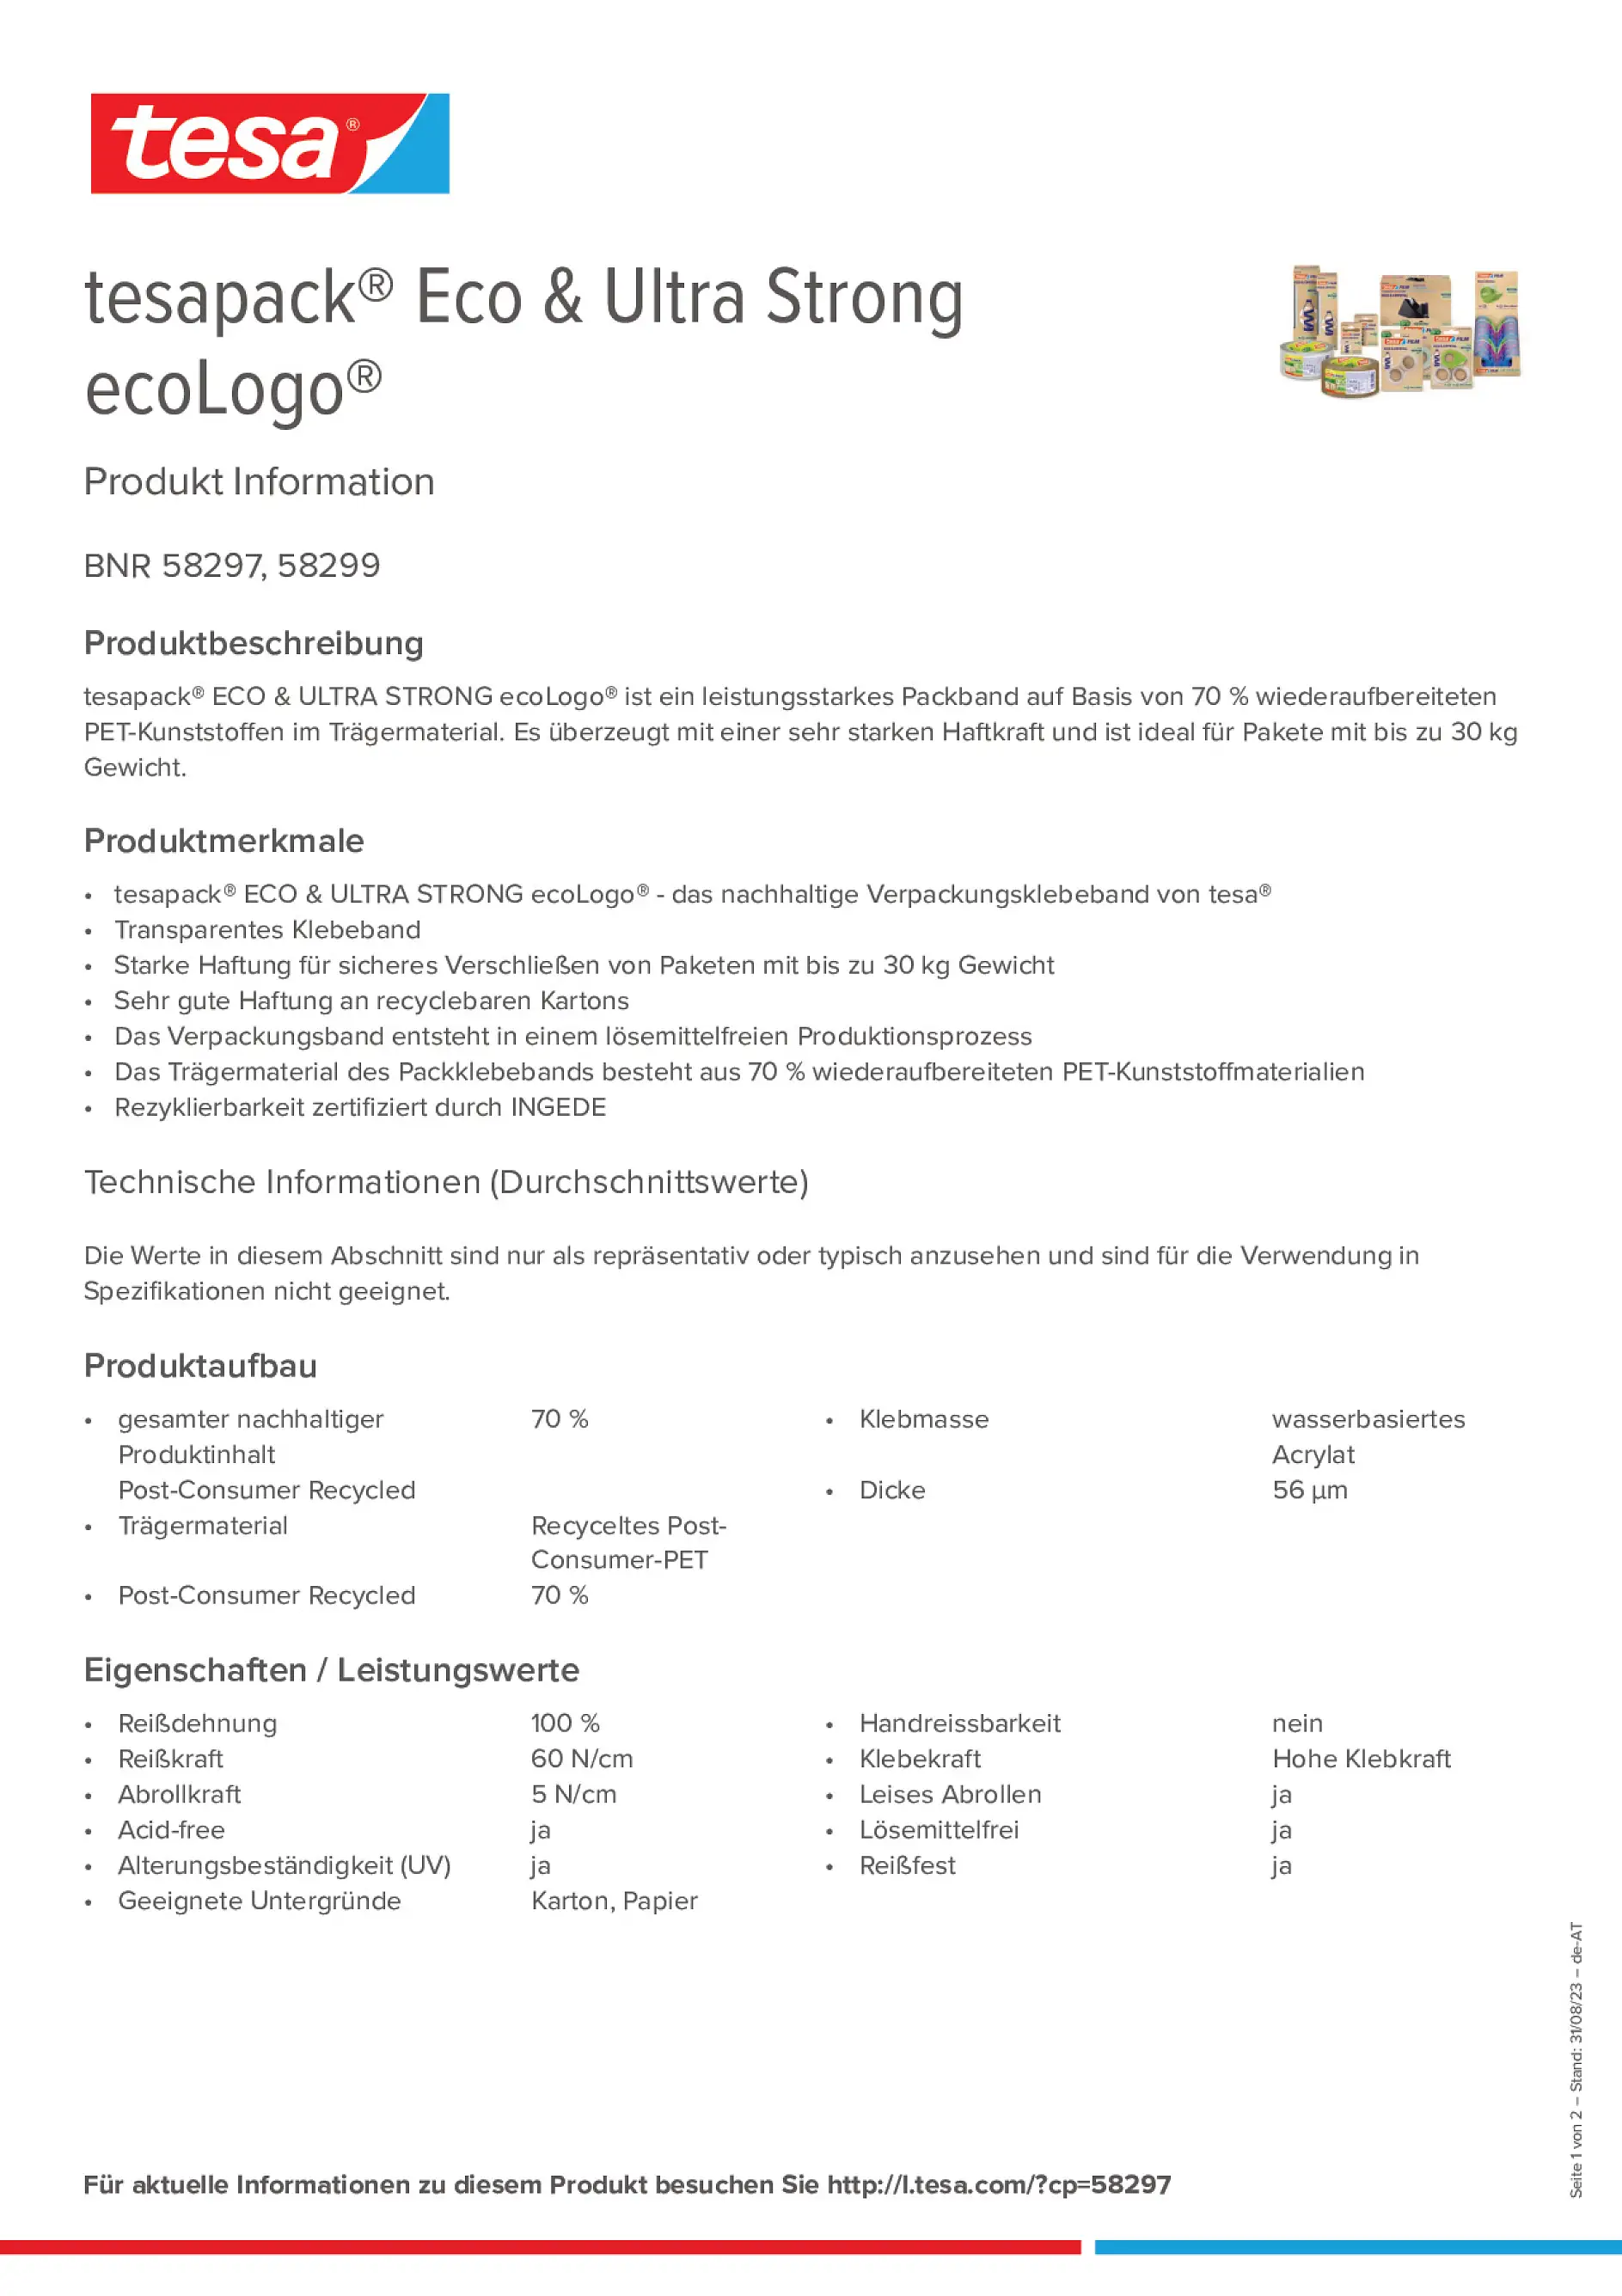 tesapack-eco-strong_copiw_de-DE